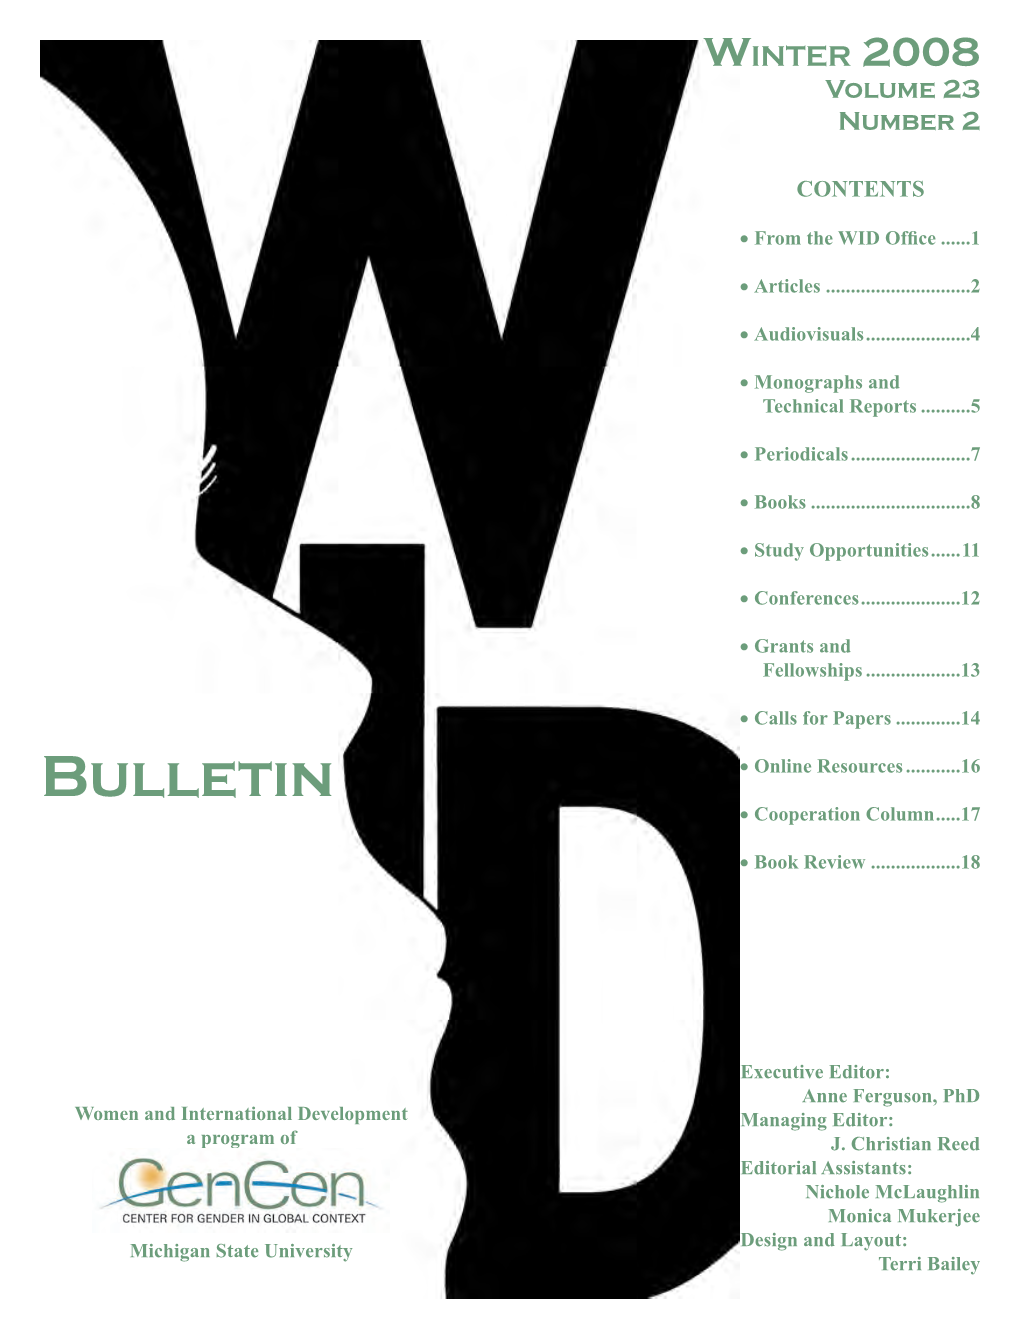 Winter 2008 Bulletin